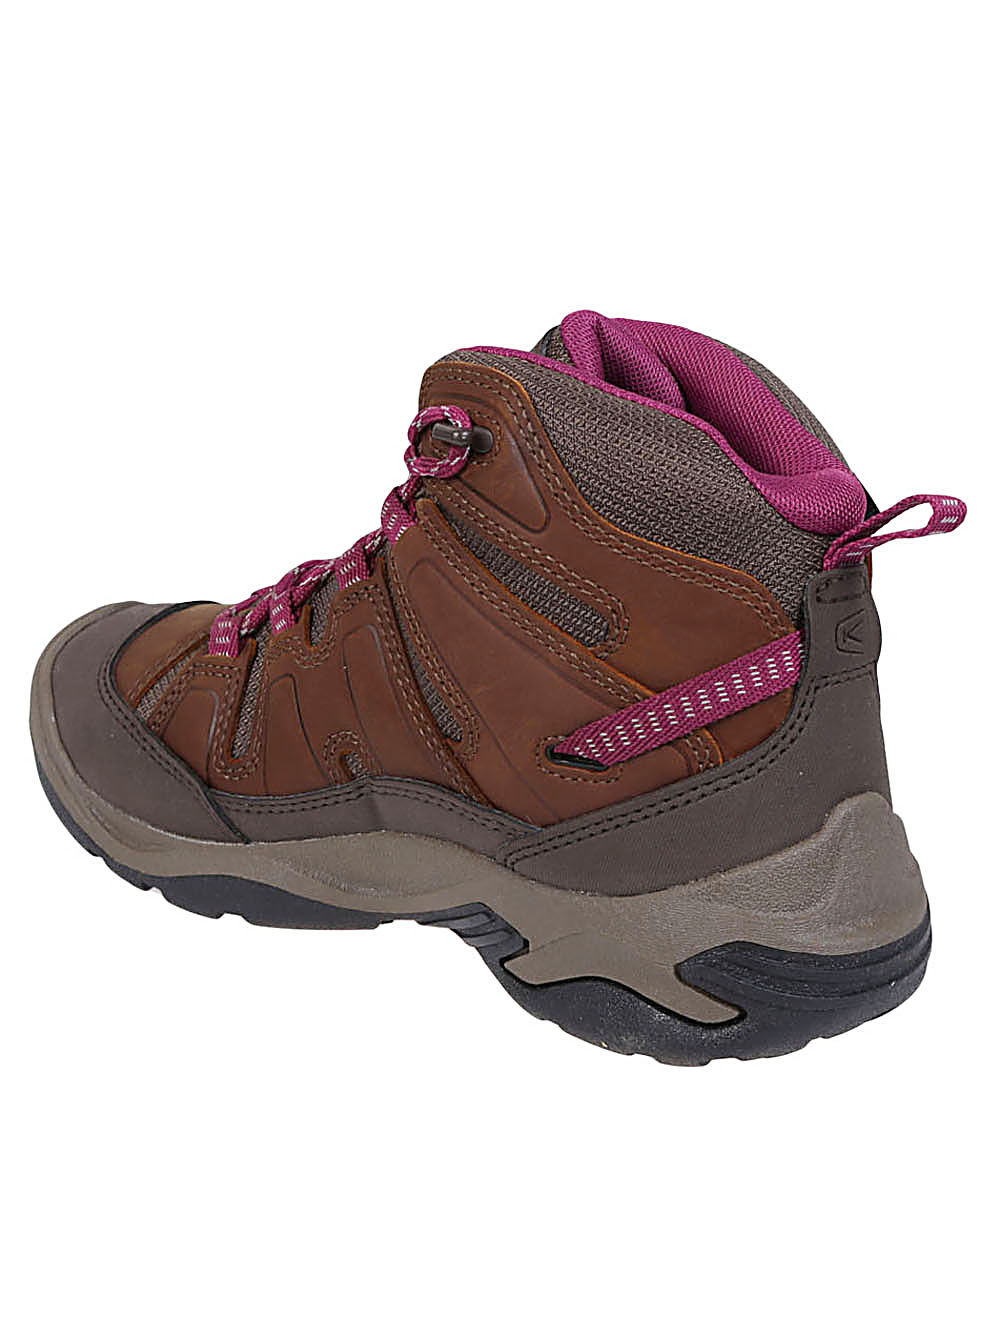 Keen KEEN- Circadia Mid Waterproof Hiking Boots